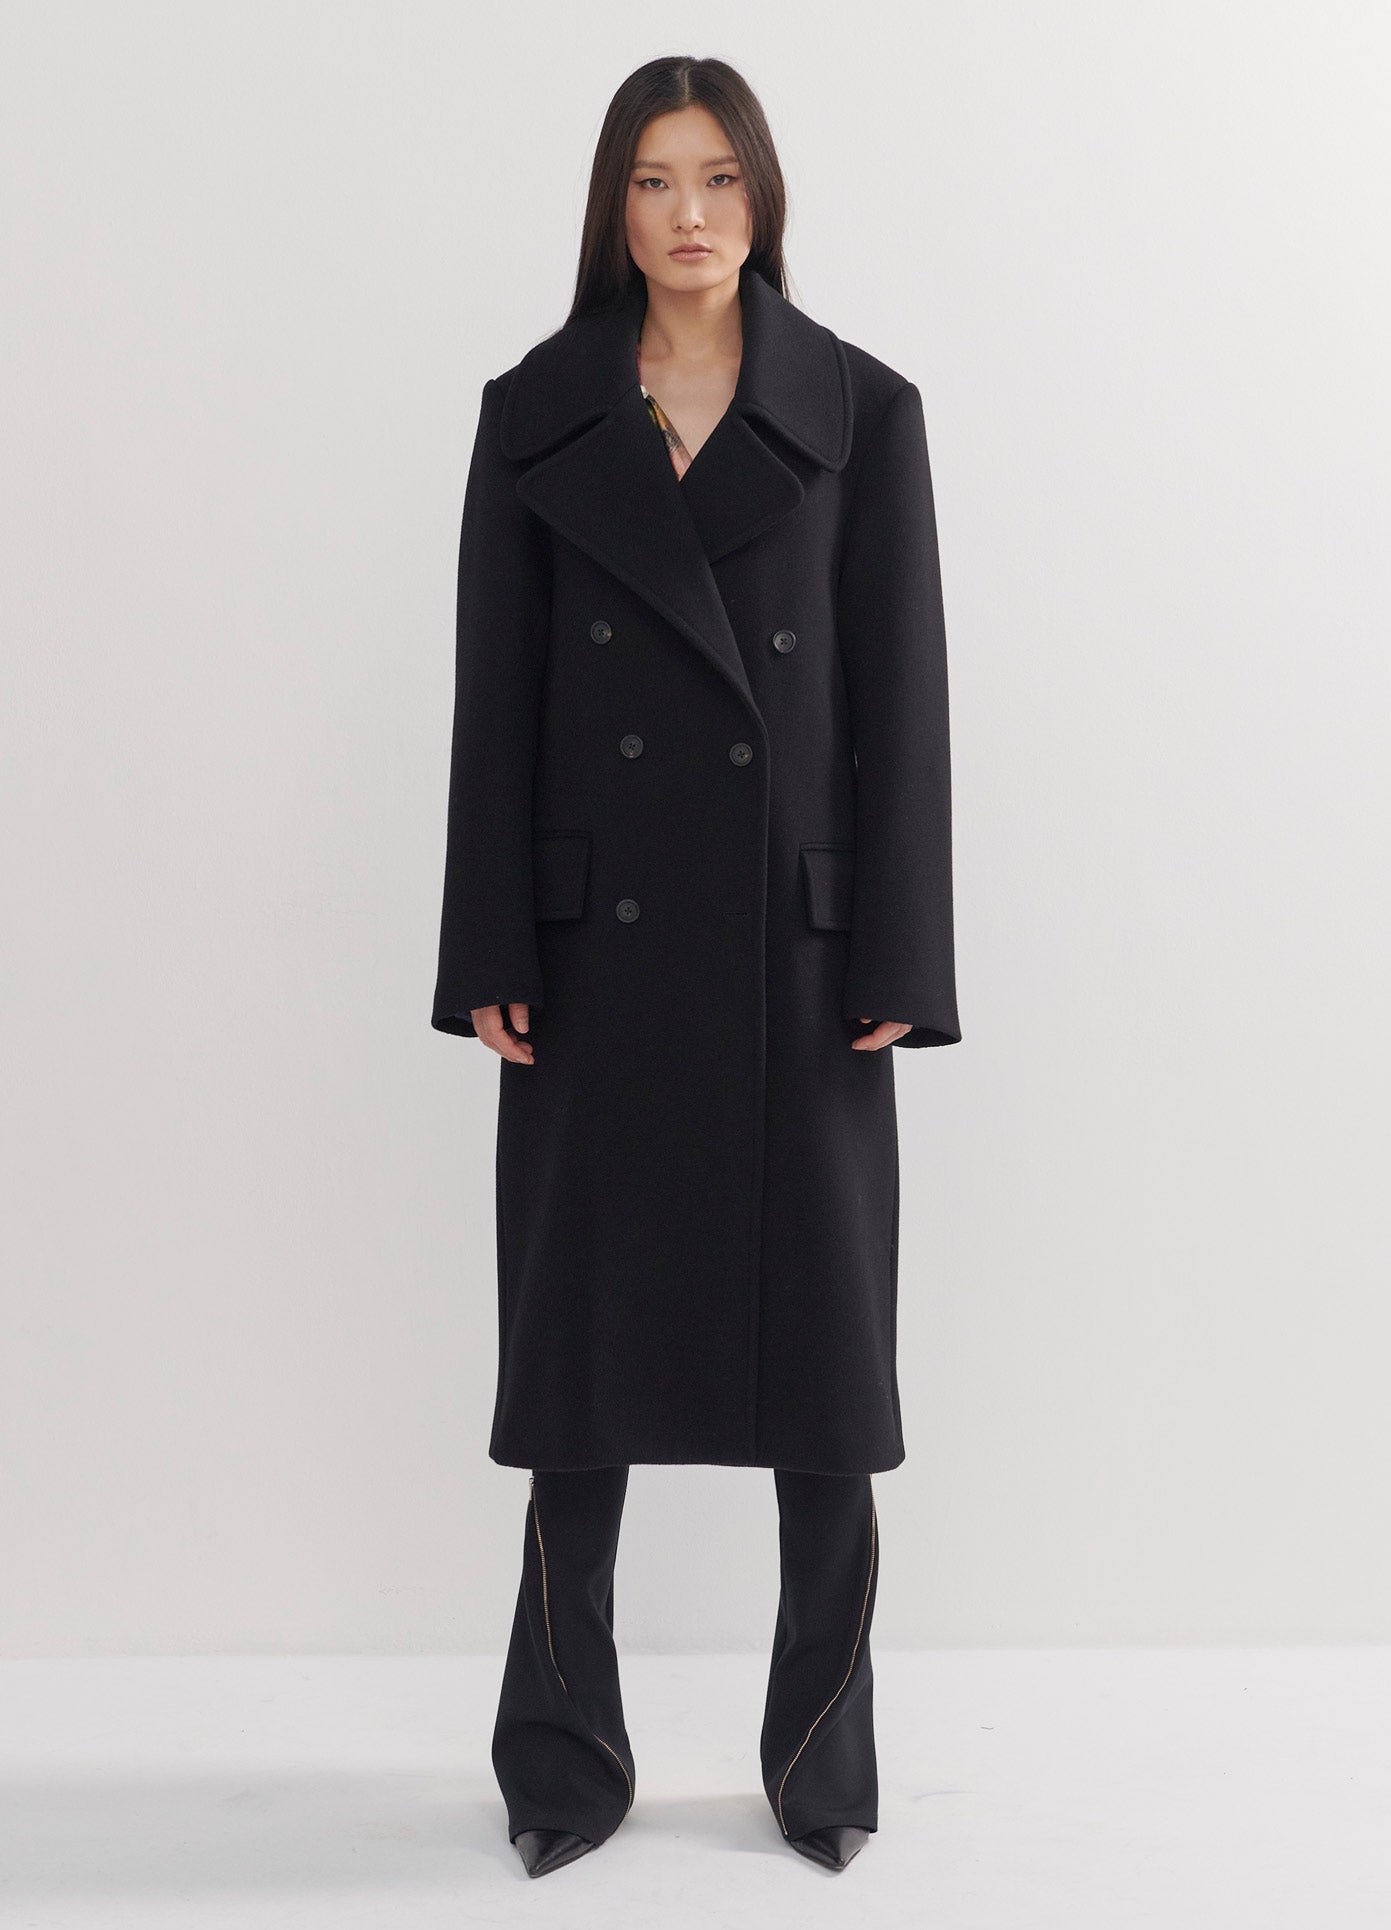 MONSE Satin Back Inset Coat in Black on Model Full Front View